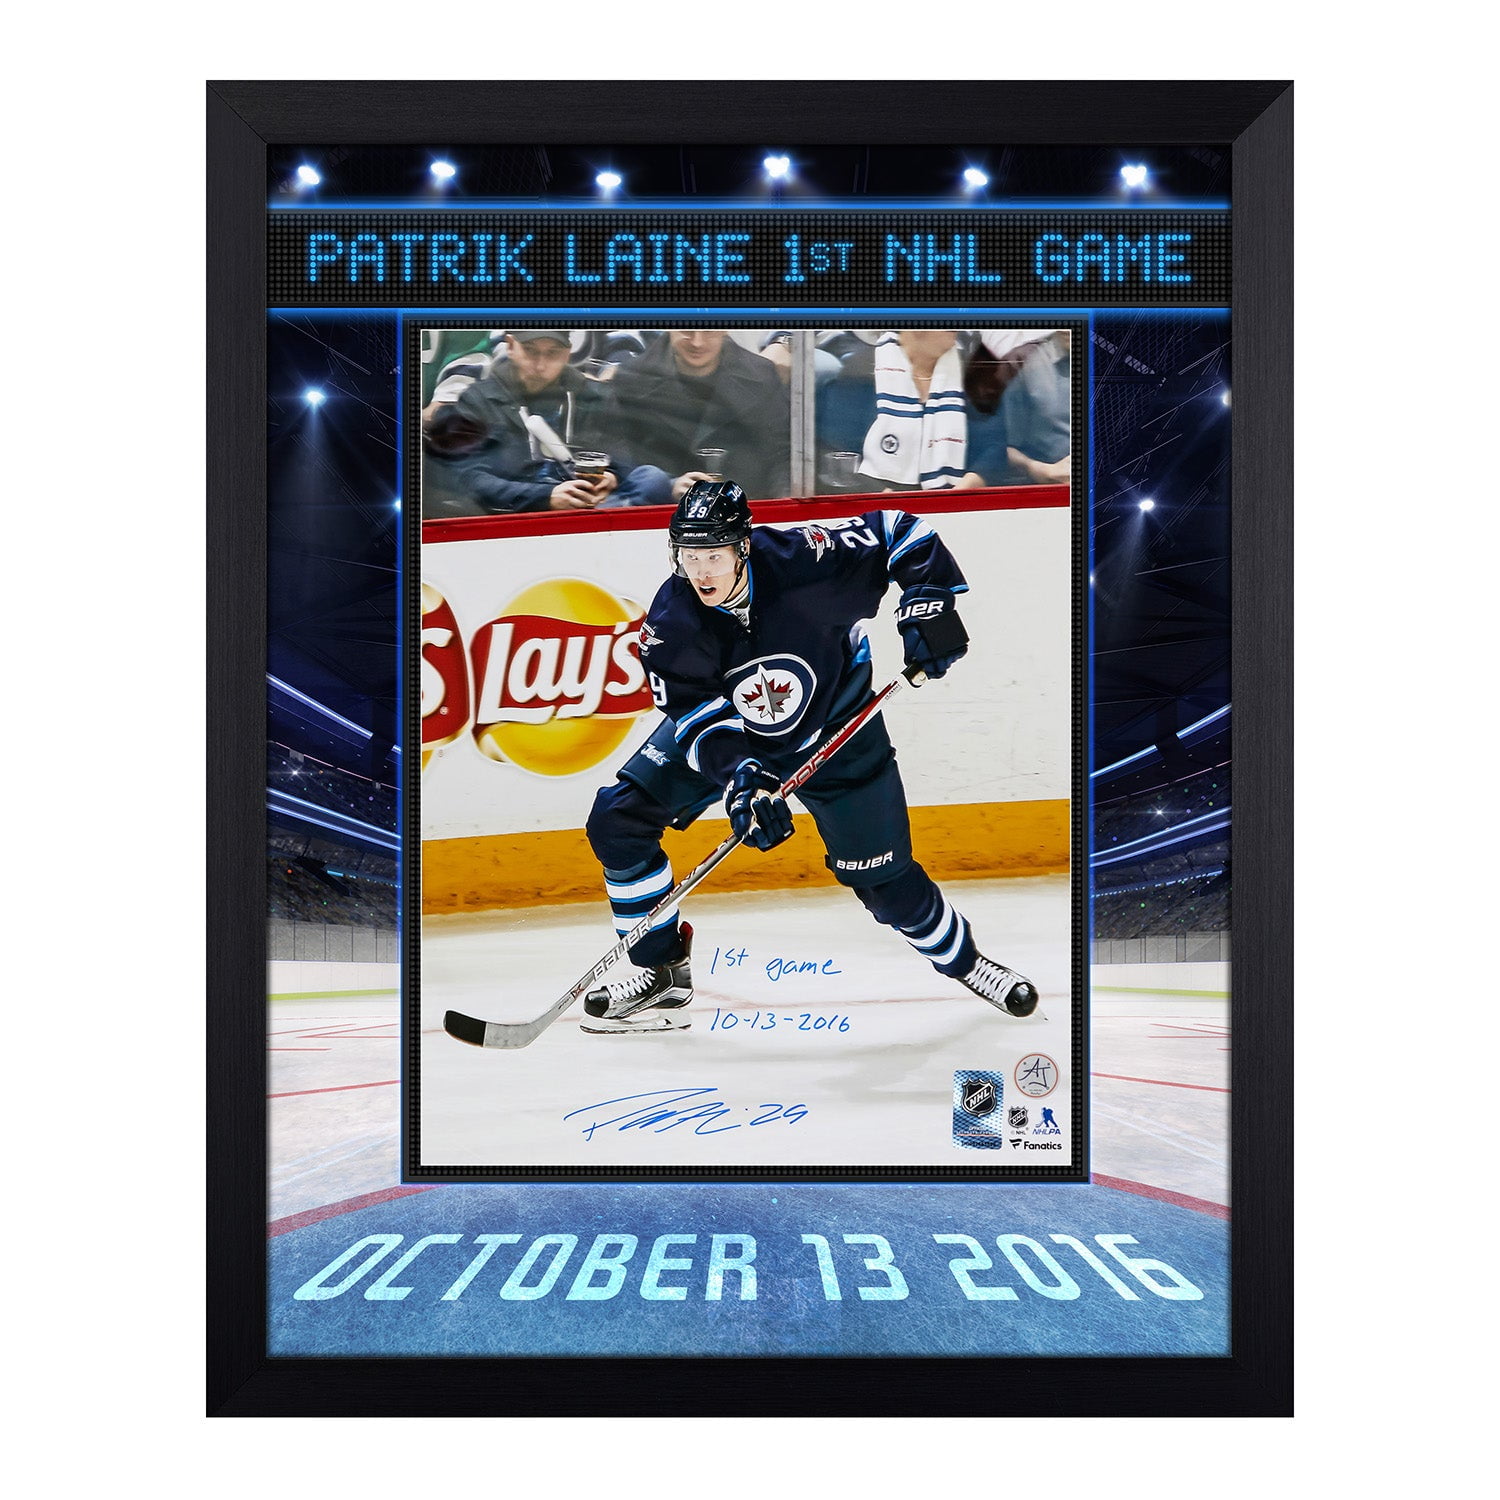 Patrik Laine NHL Original Autographed Items for sale